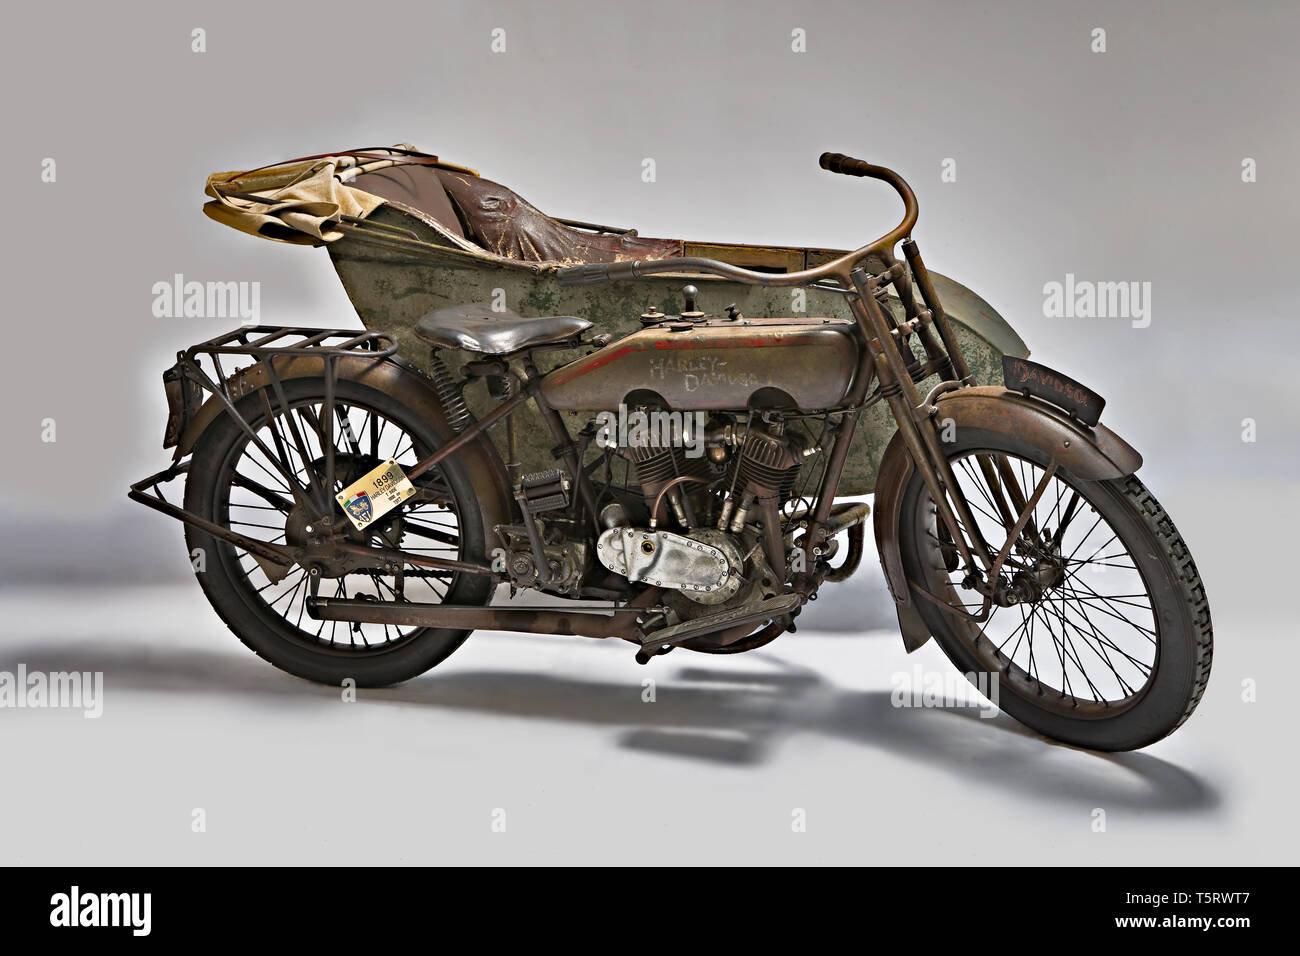 Moto d'epoca Harley-Davidson T-Seite Marca: Harley-Davidson modello: T Seite nazione: USA - Milwaukee Anno: 1917 condizioni: conserv Stockfoto